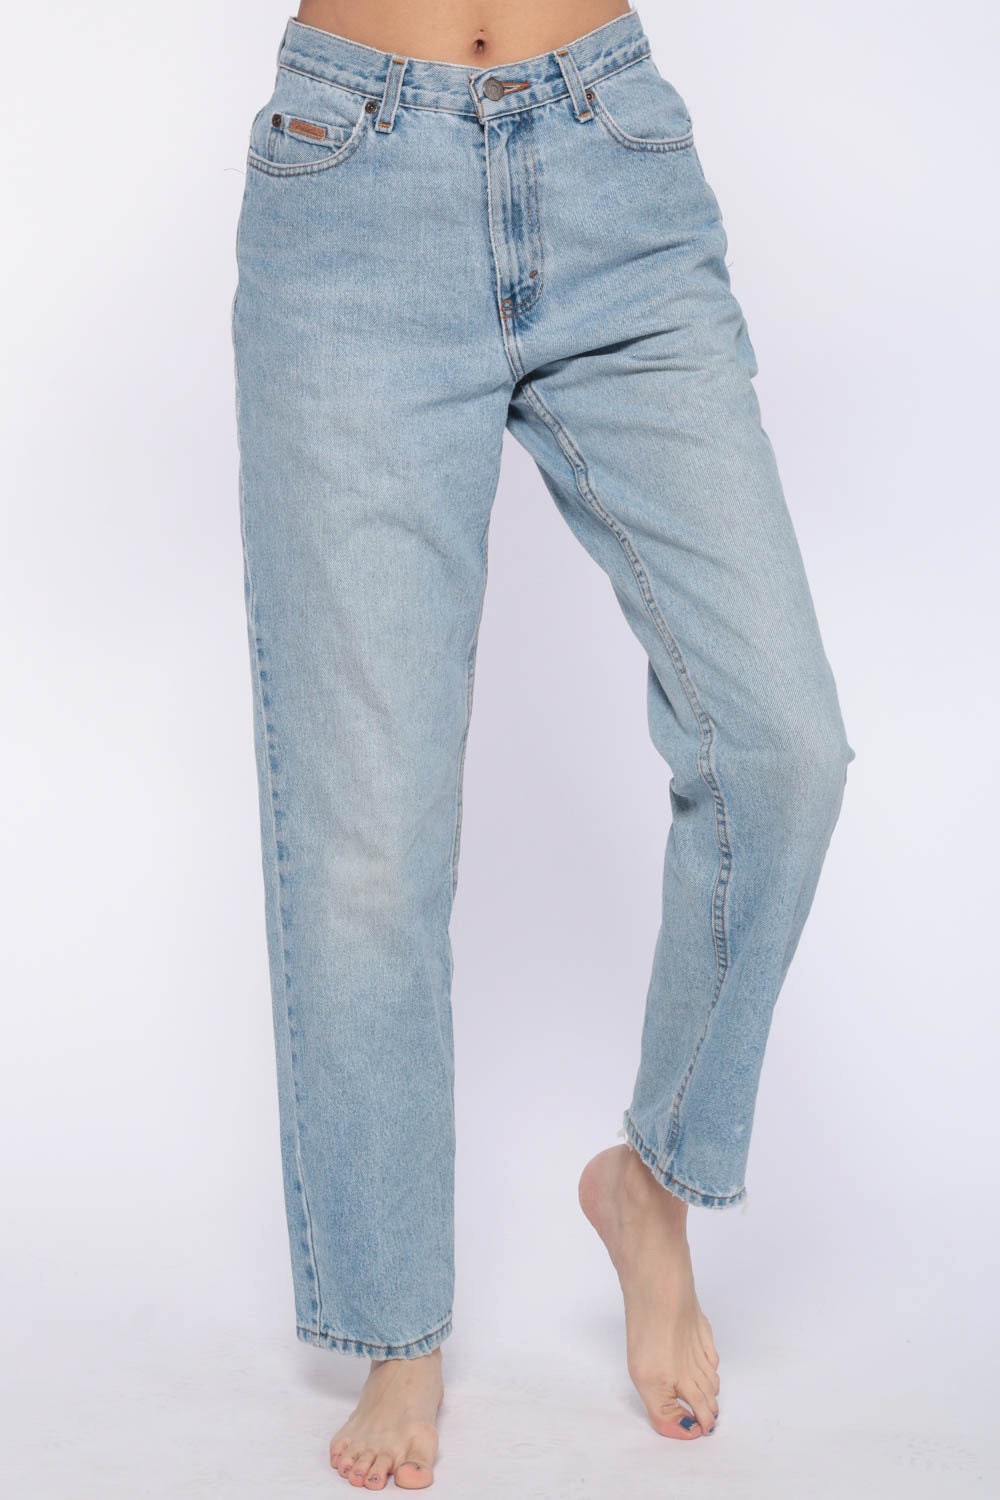 90s baggy high waist jeans